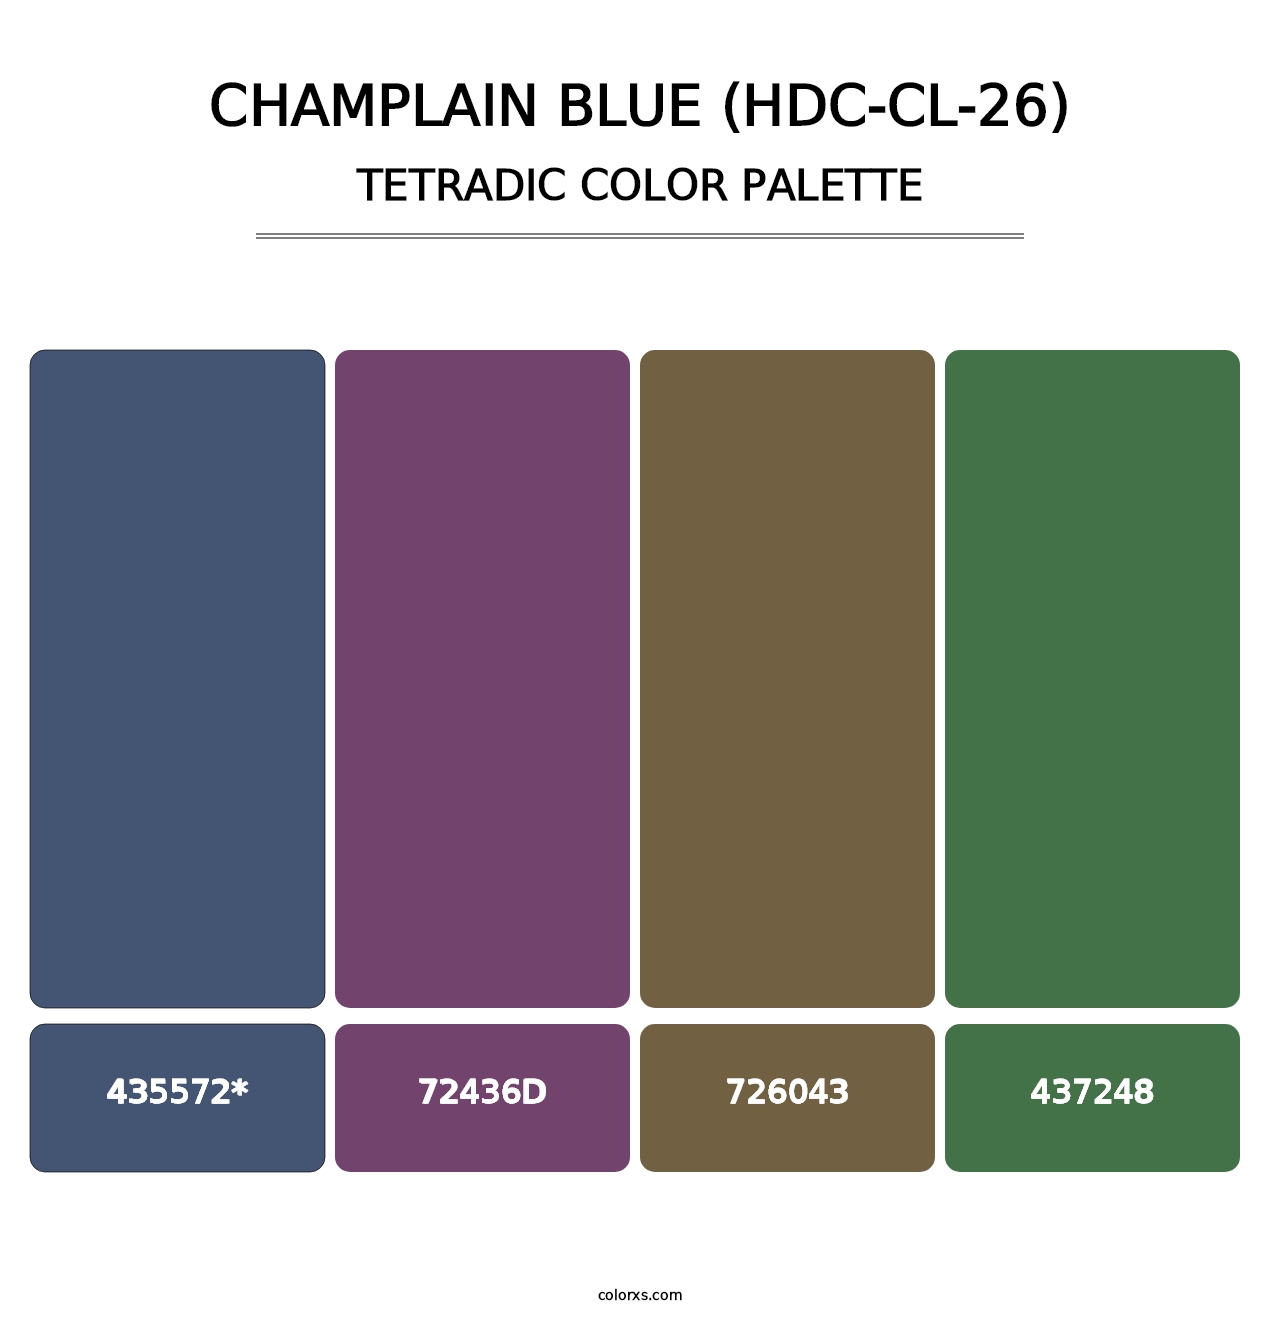 Champlain Blue (HDC-CL-26) - Tetradic Color Palette